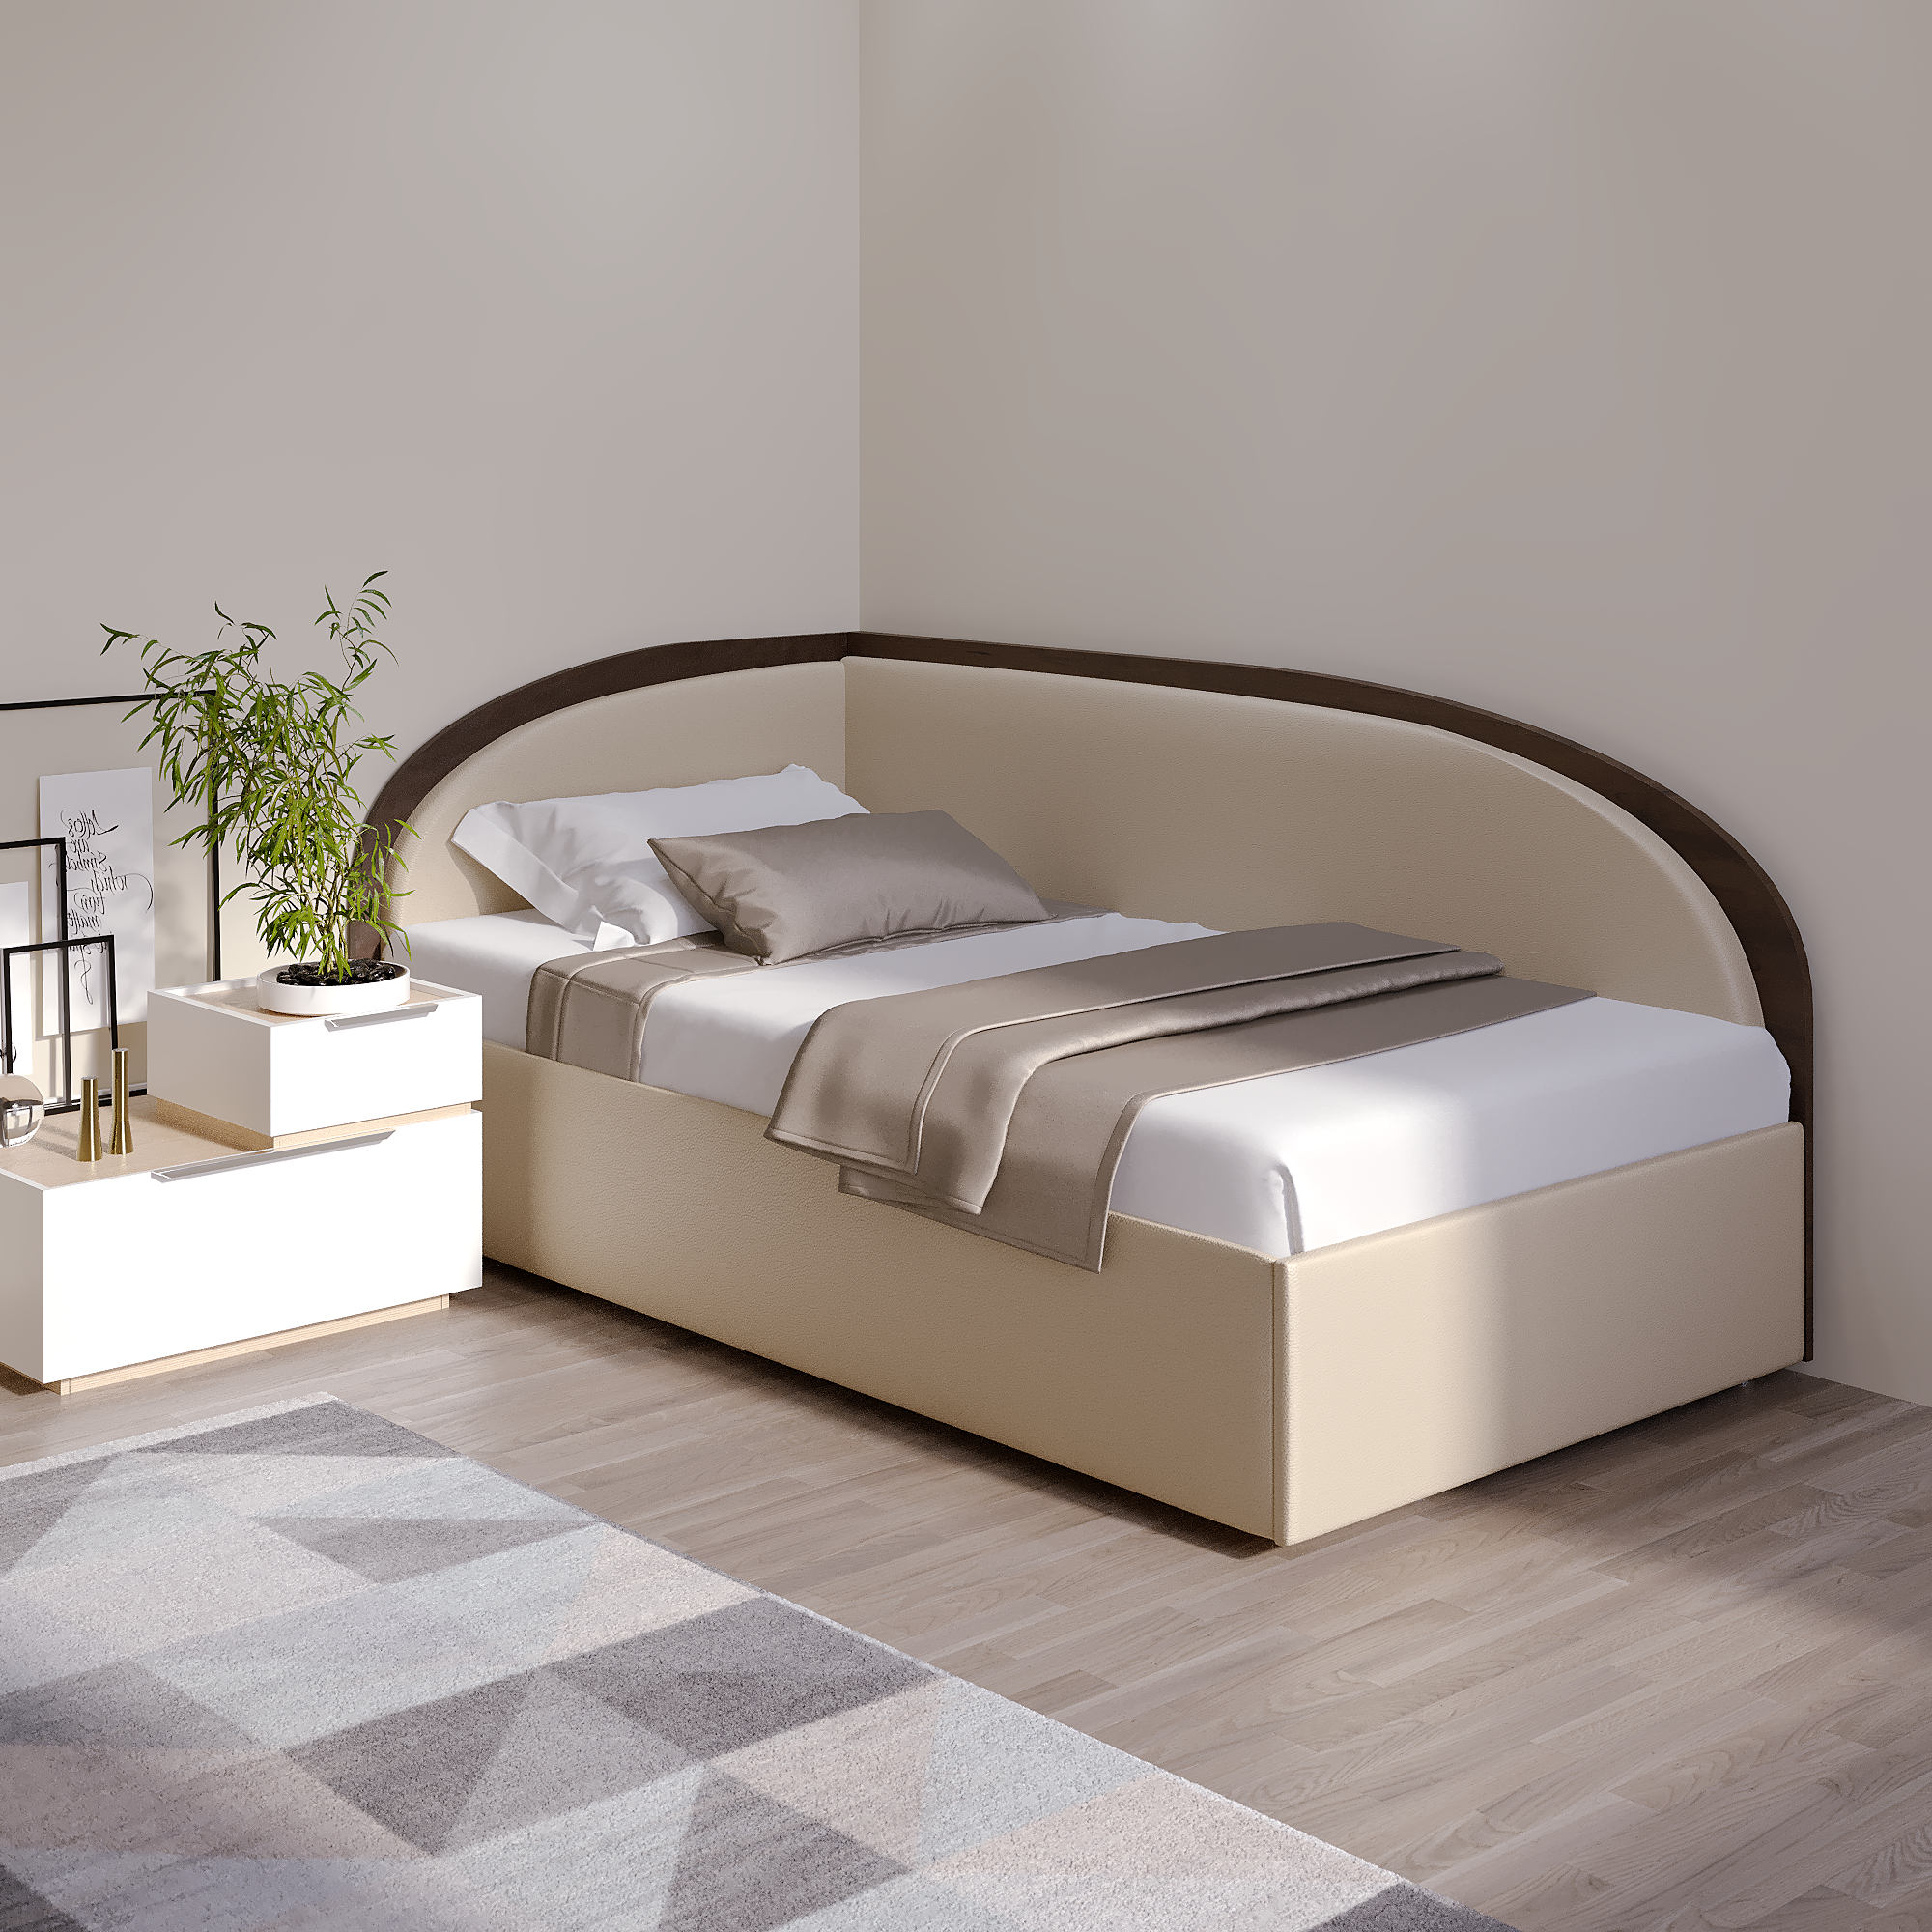 Угловая кровать Ника двуспальная, размер (ДхШ) 120х200, цвет венге